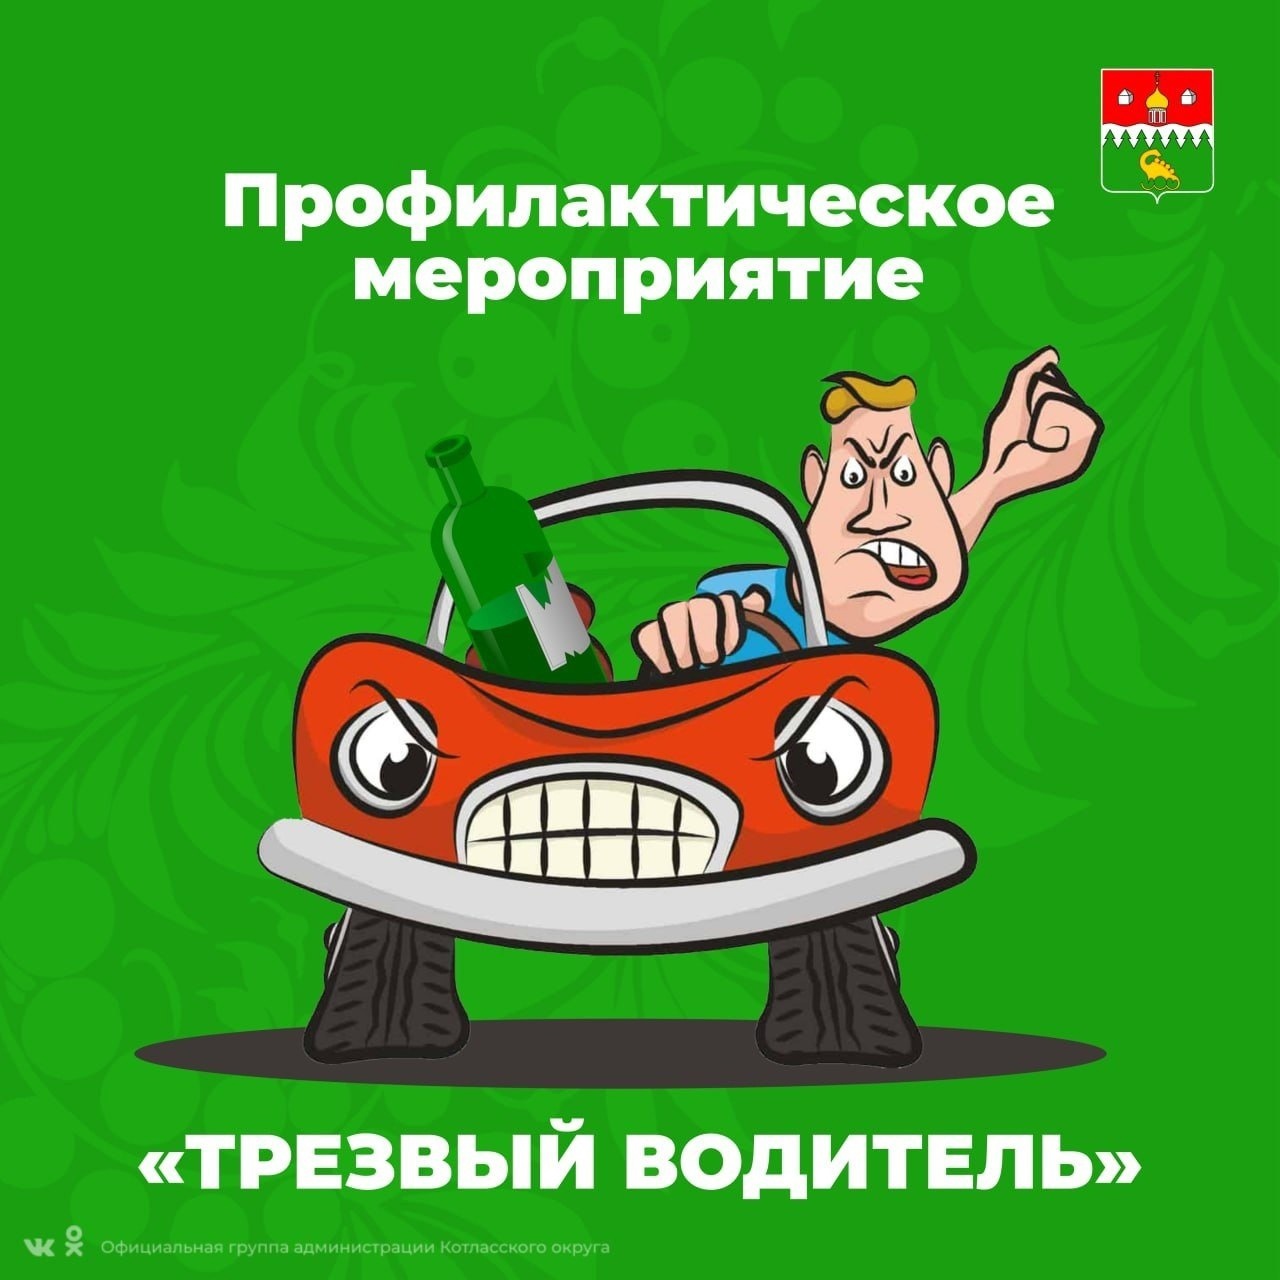 С 22 по 25 февраля на территории Котласа, Коряжмы и Котласского округа пройдет профилактическое мероприятие «Трезвый водитель».